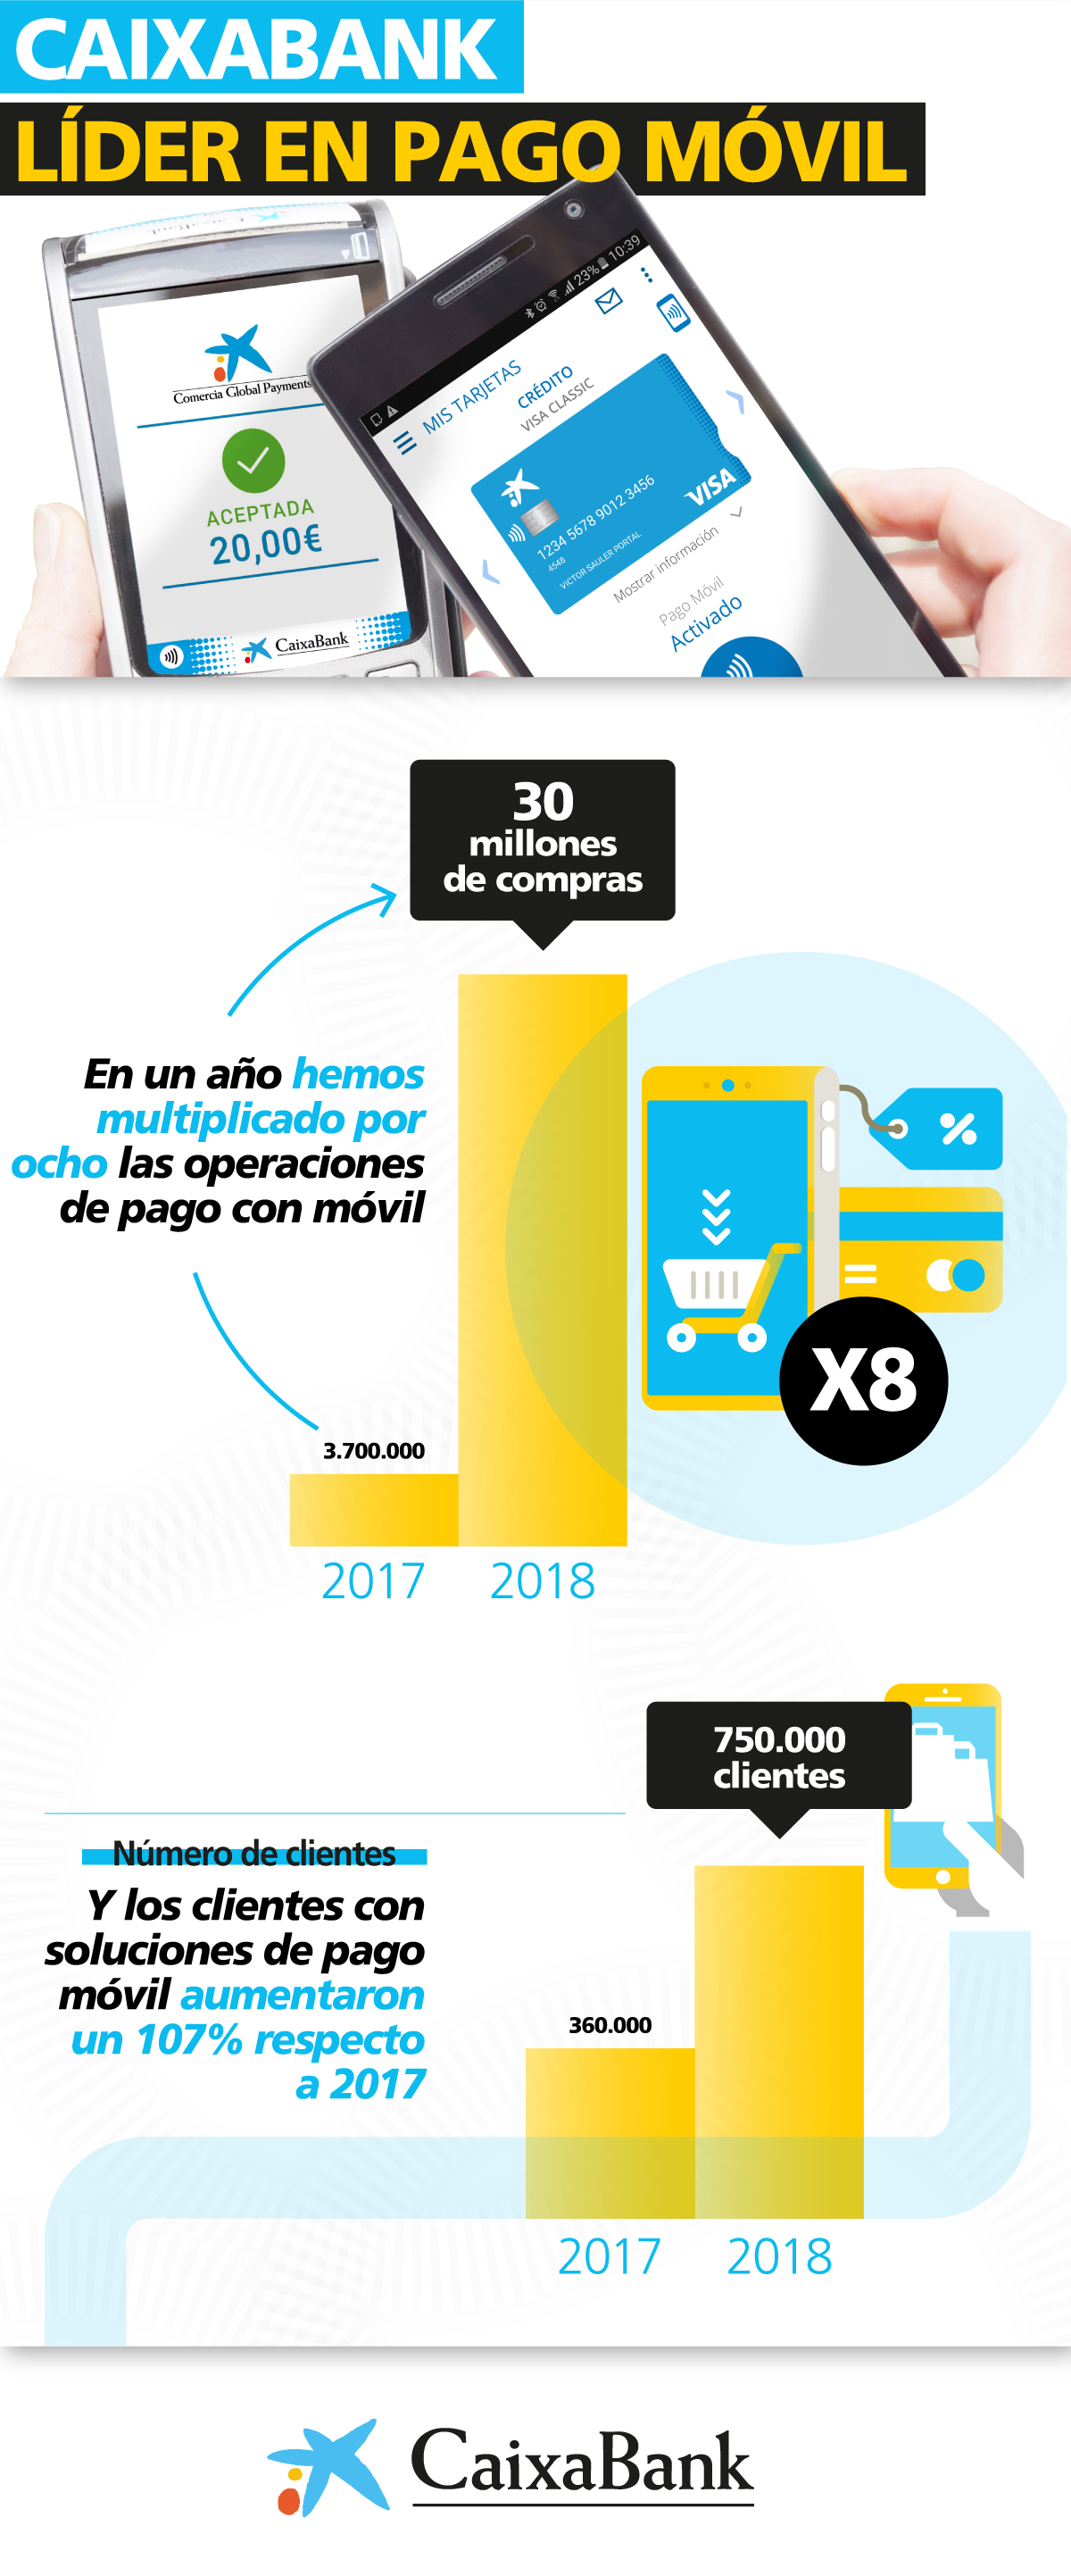 CaixaBank multiplica por ocho las operaciones de pago móvil en un año y alcanza los 885 M€